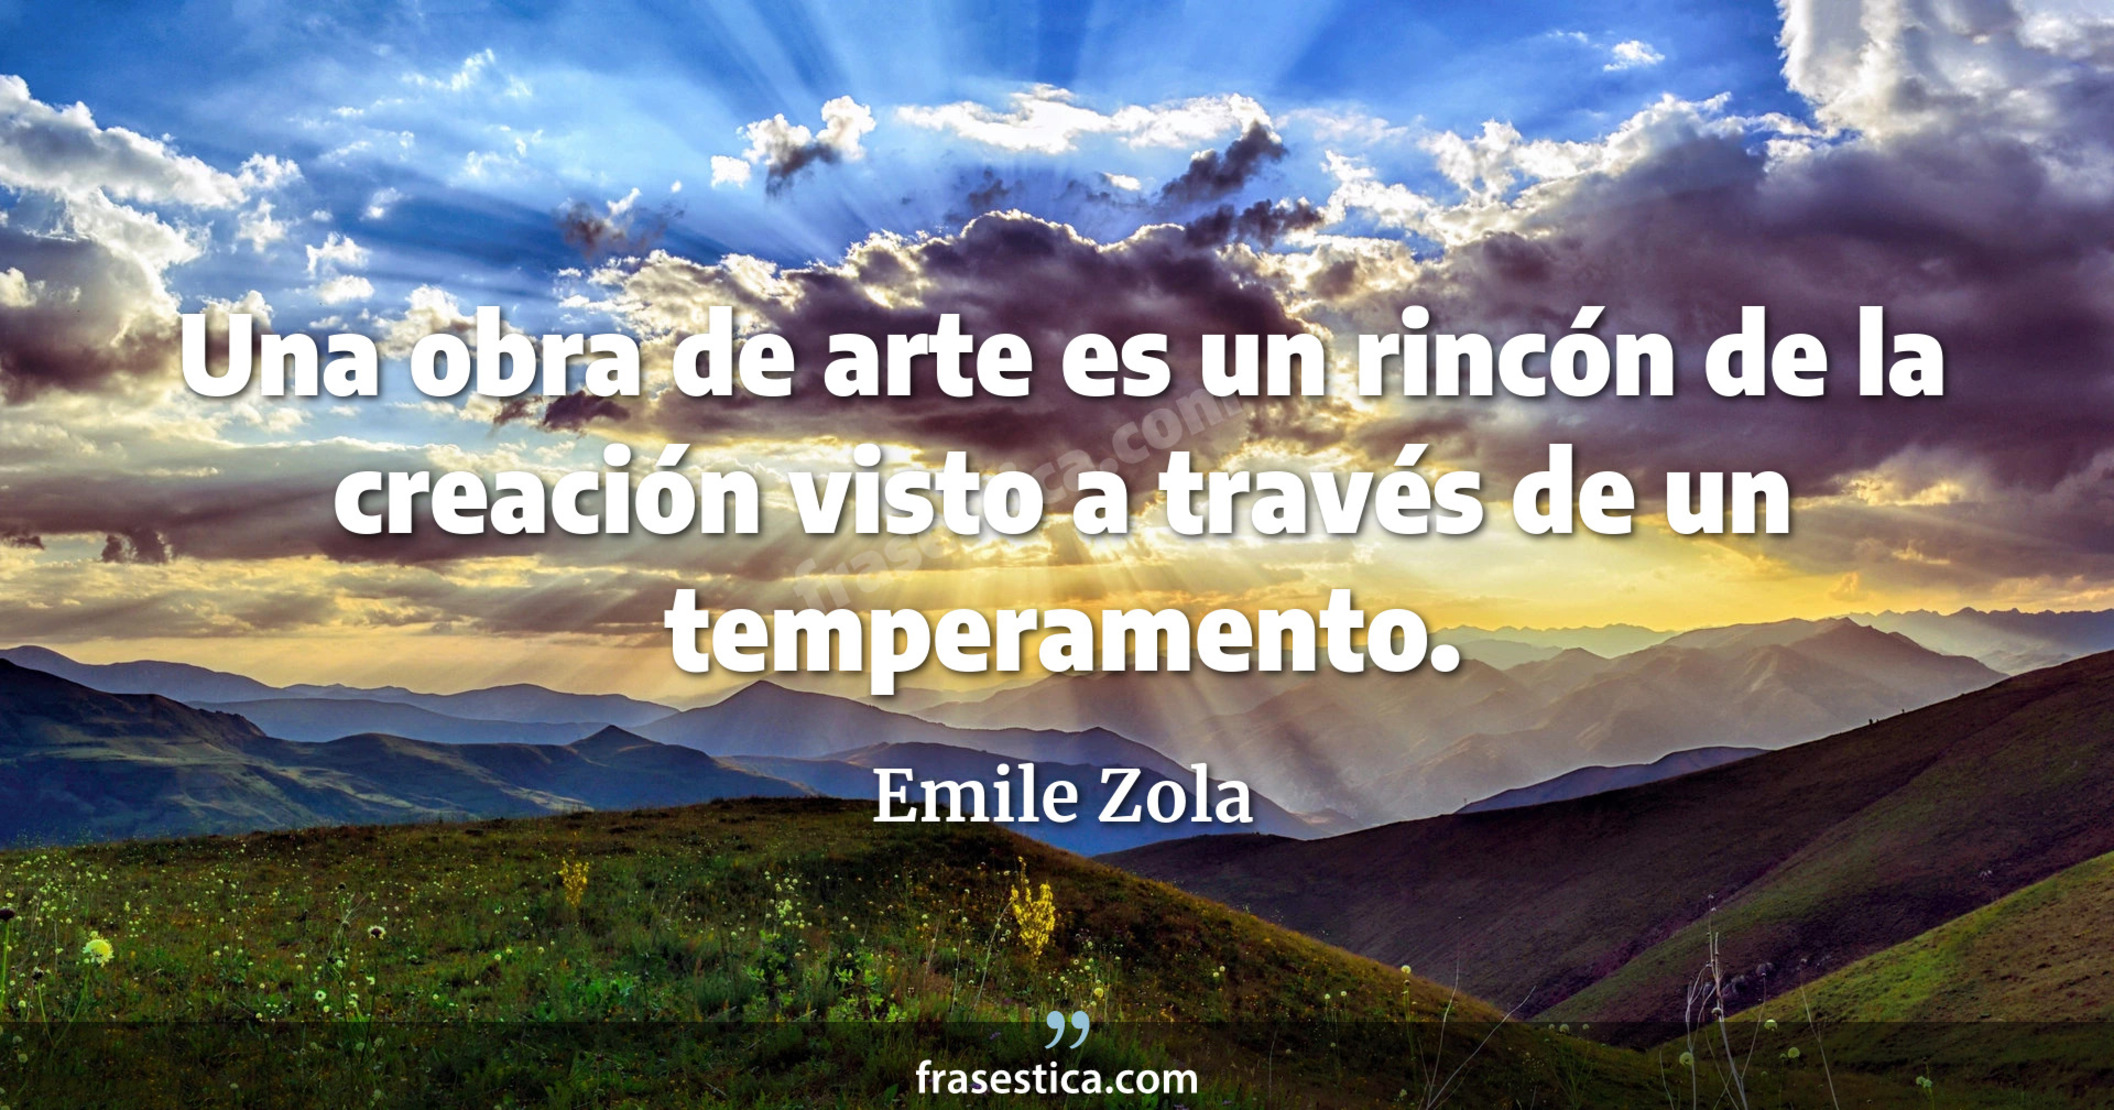 Una obra de arte es un rincón de la creación visto a través de un temperamento. - Emile Zola